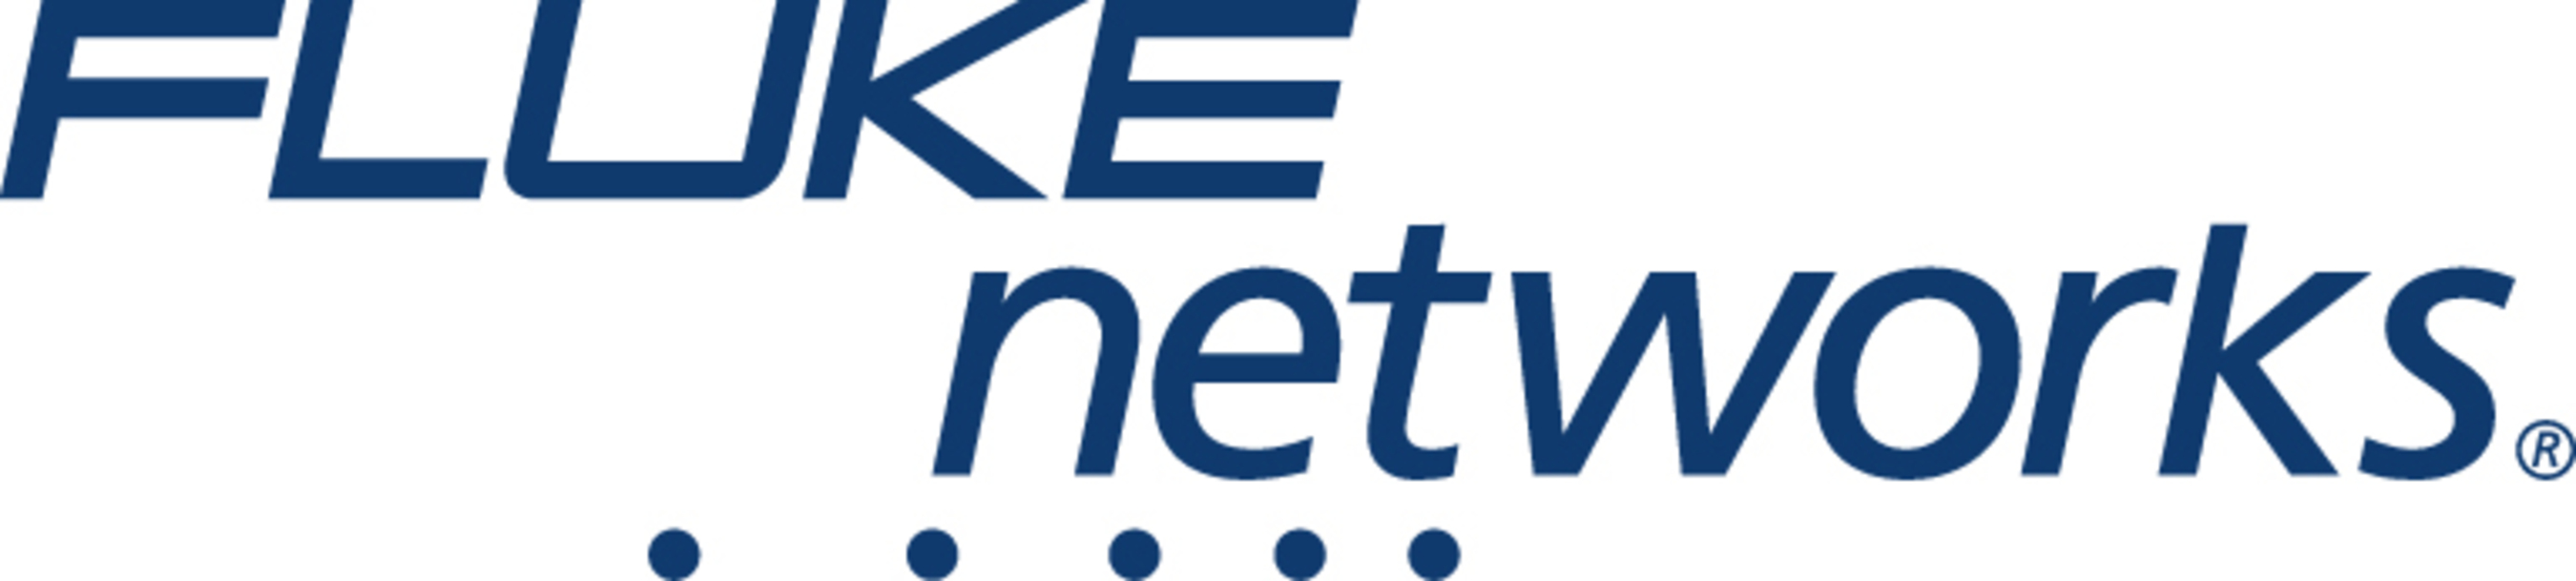 Fluke Networks logo. (PRNewsFoto/Fluke Networks) (PRNewsFoto/)